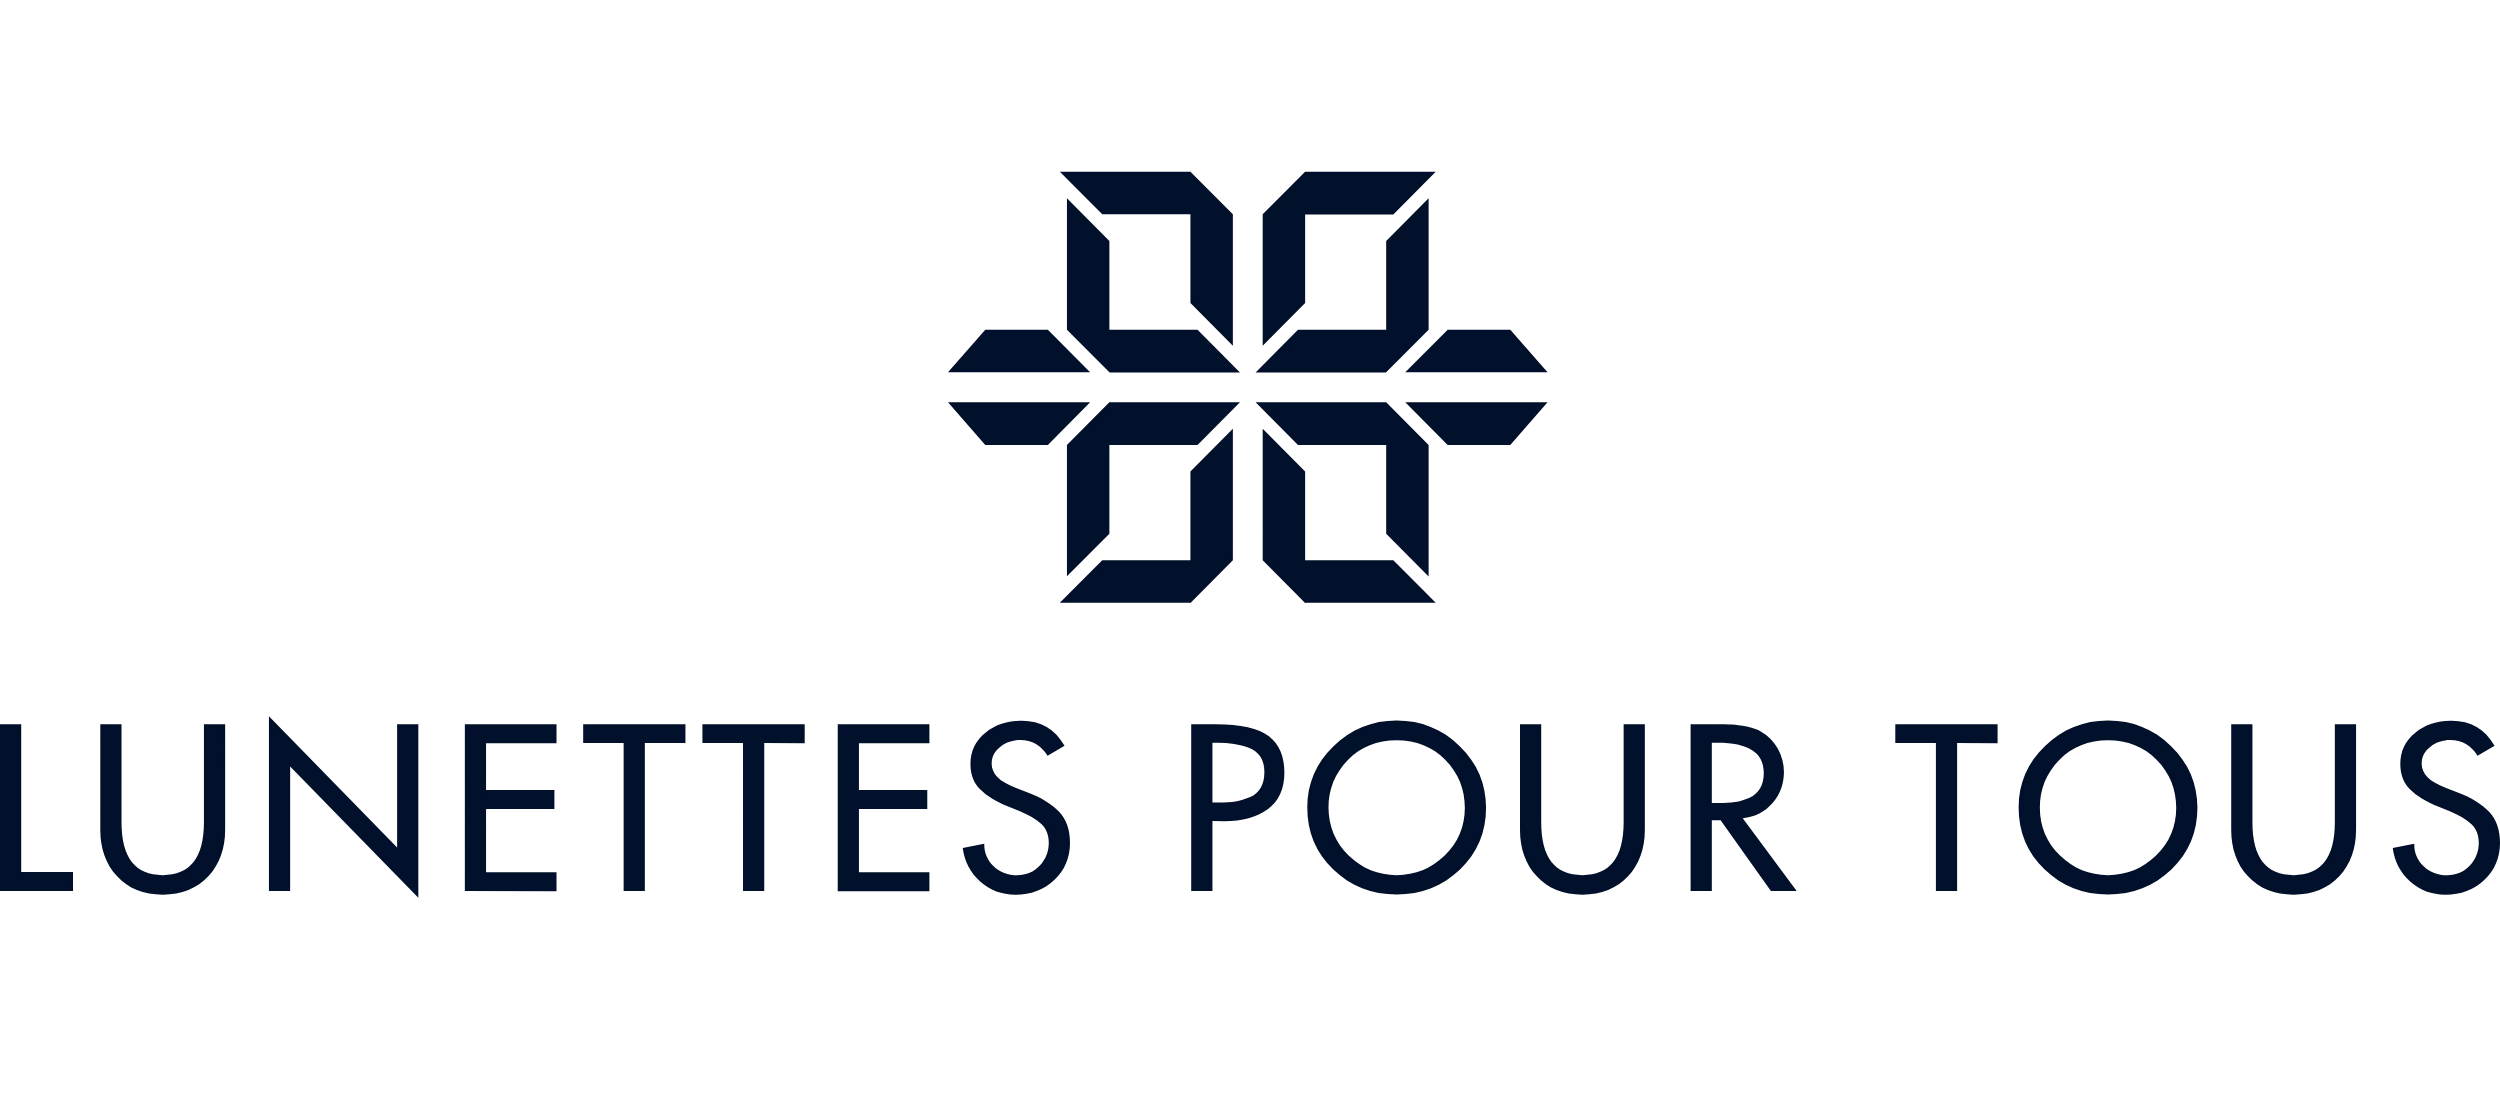 Lunettes Pour Tous logo